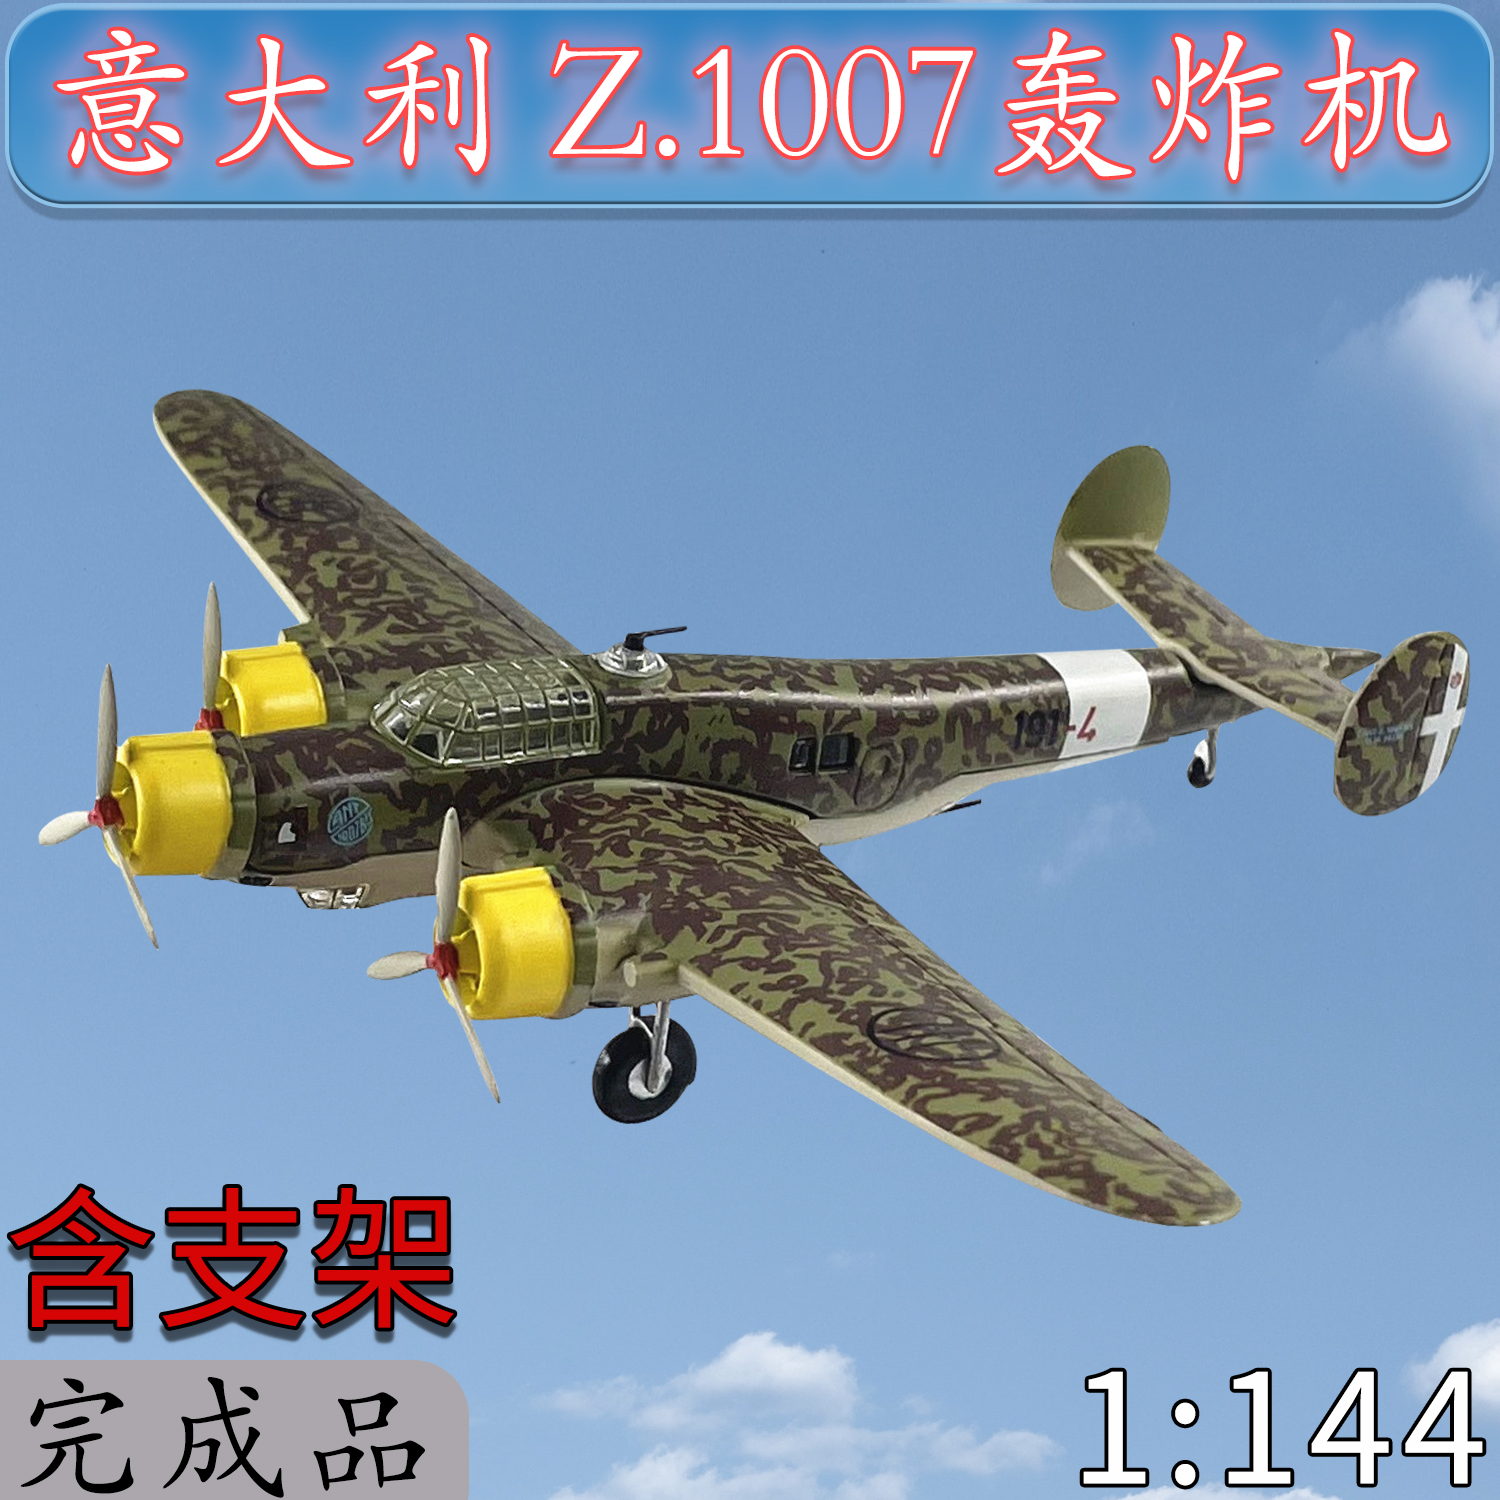 1:144意大利Z.1007轰炸机合金二战飞机模型静态成品收藏送礼AL29